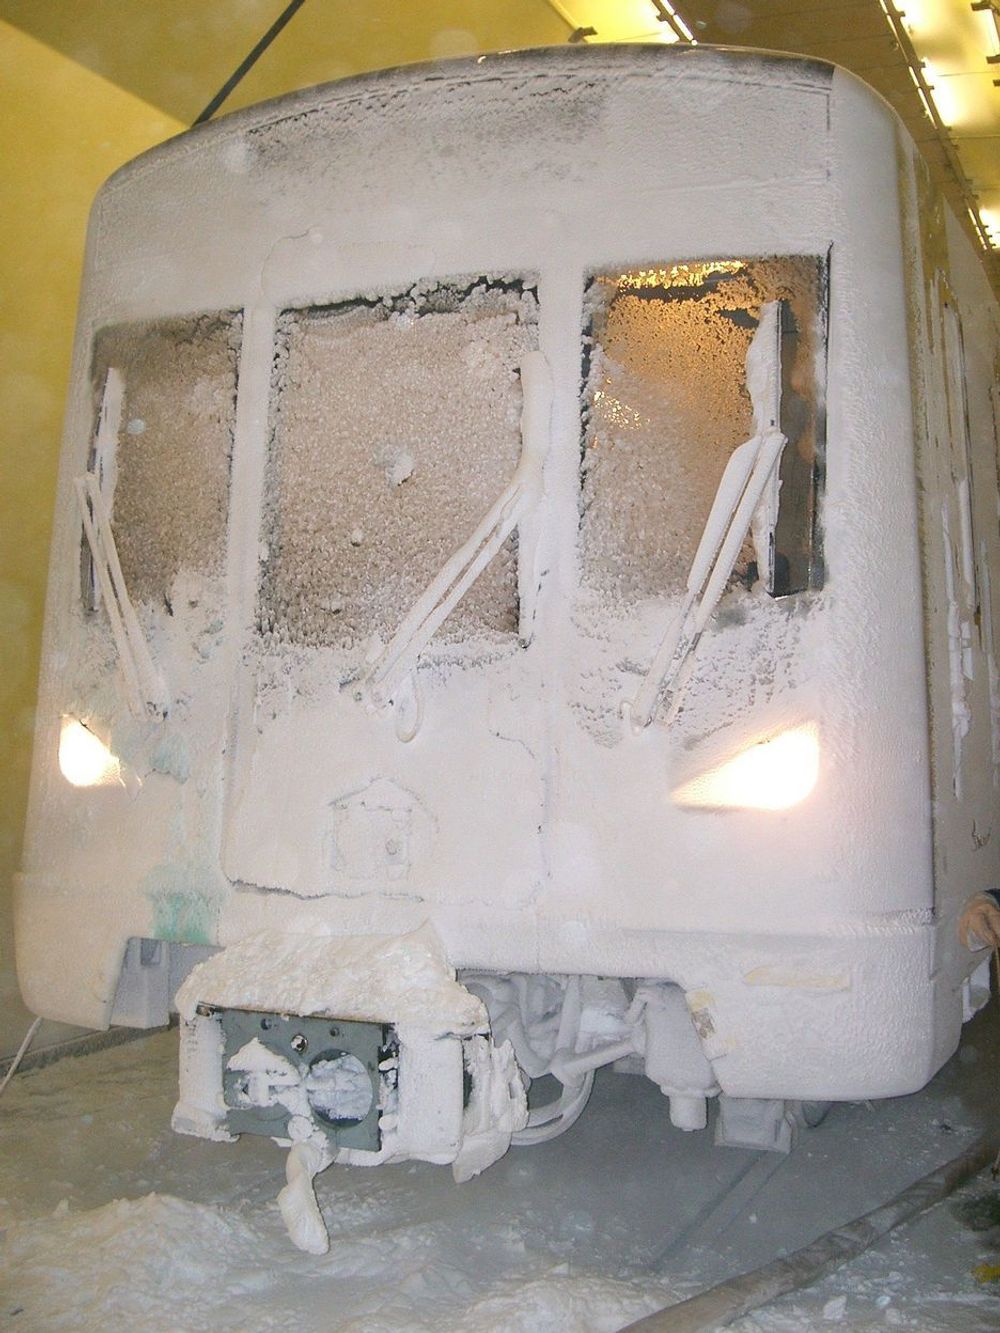 TESTES: T-banevognene testes ut om de tåler tøff Oslovinter i klimaanlegg i Wien.